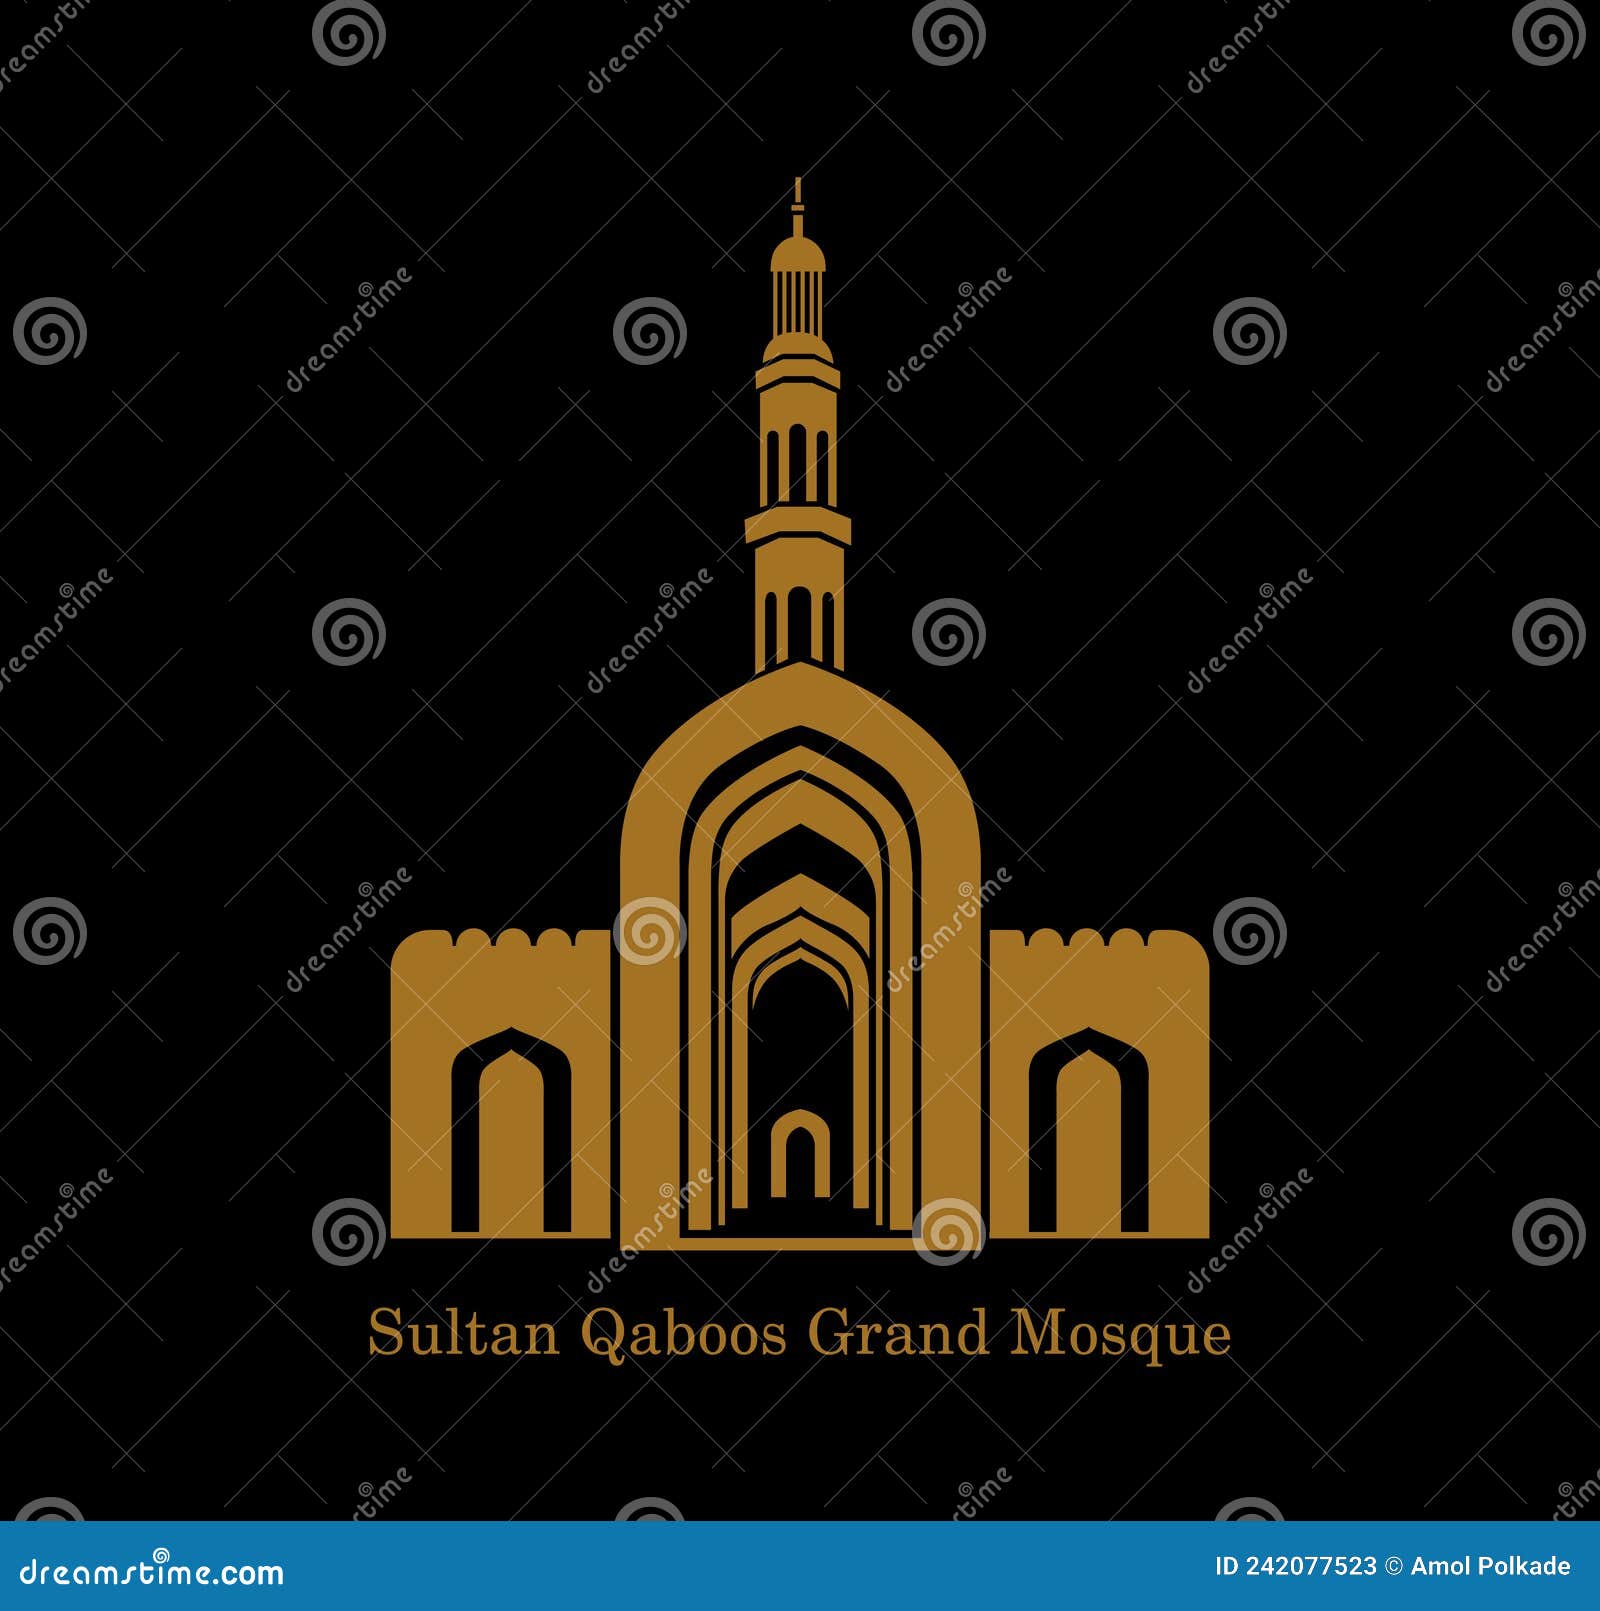 sultan qaboos grand mosque  icon. sultan qaboos grand mosque  , sultan qaboos grand mosque front gate in